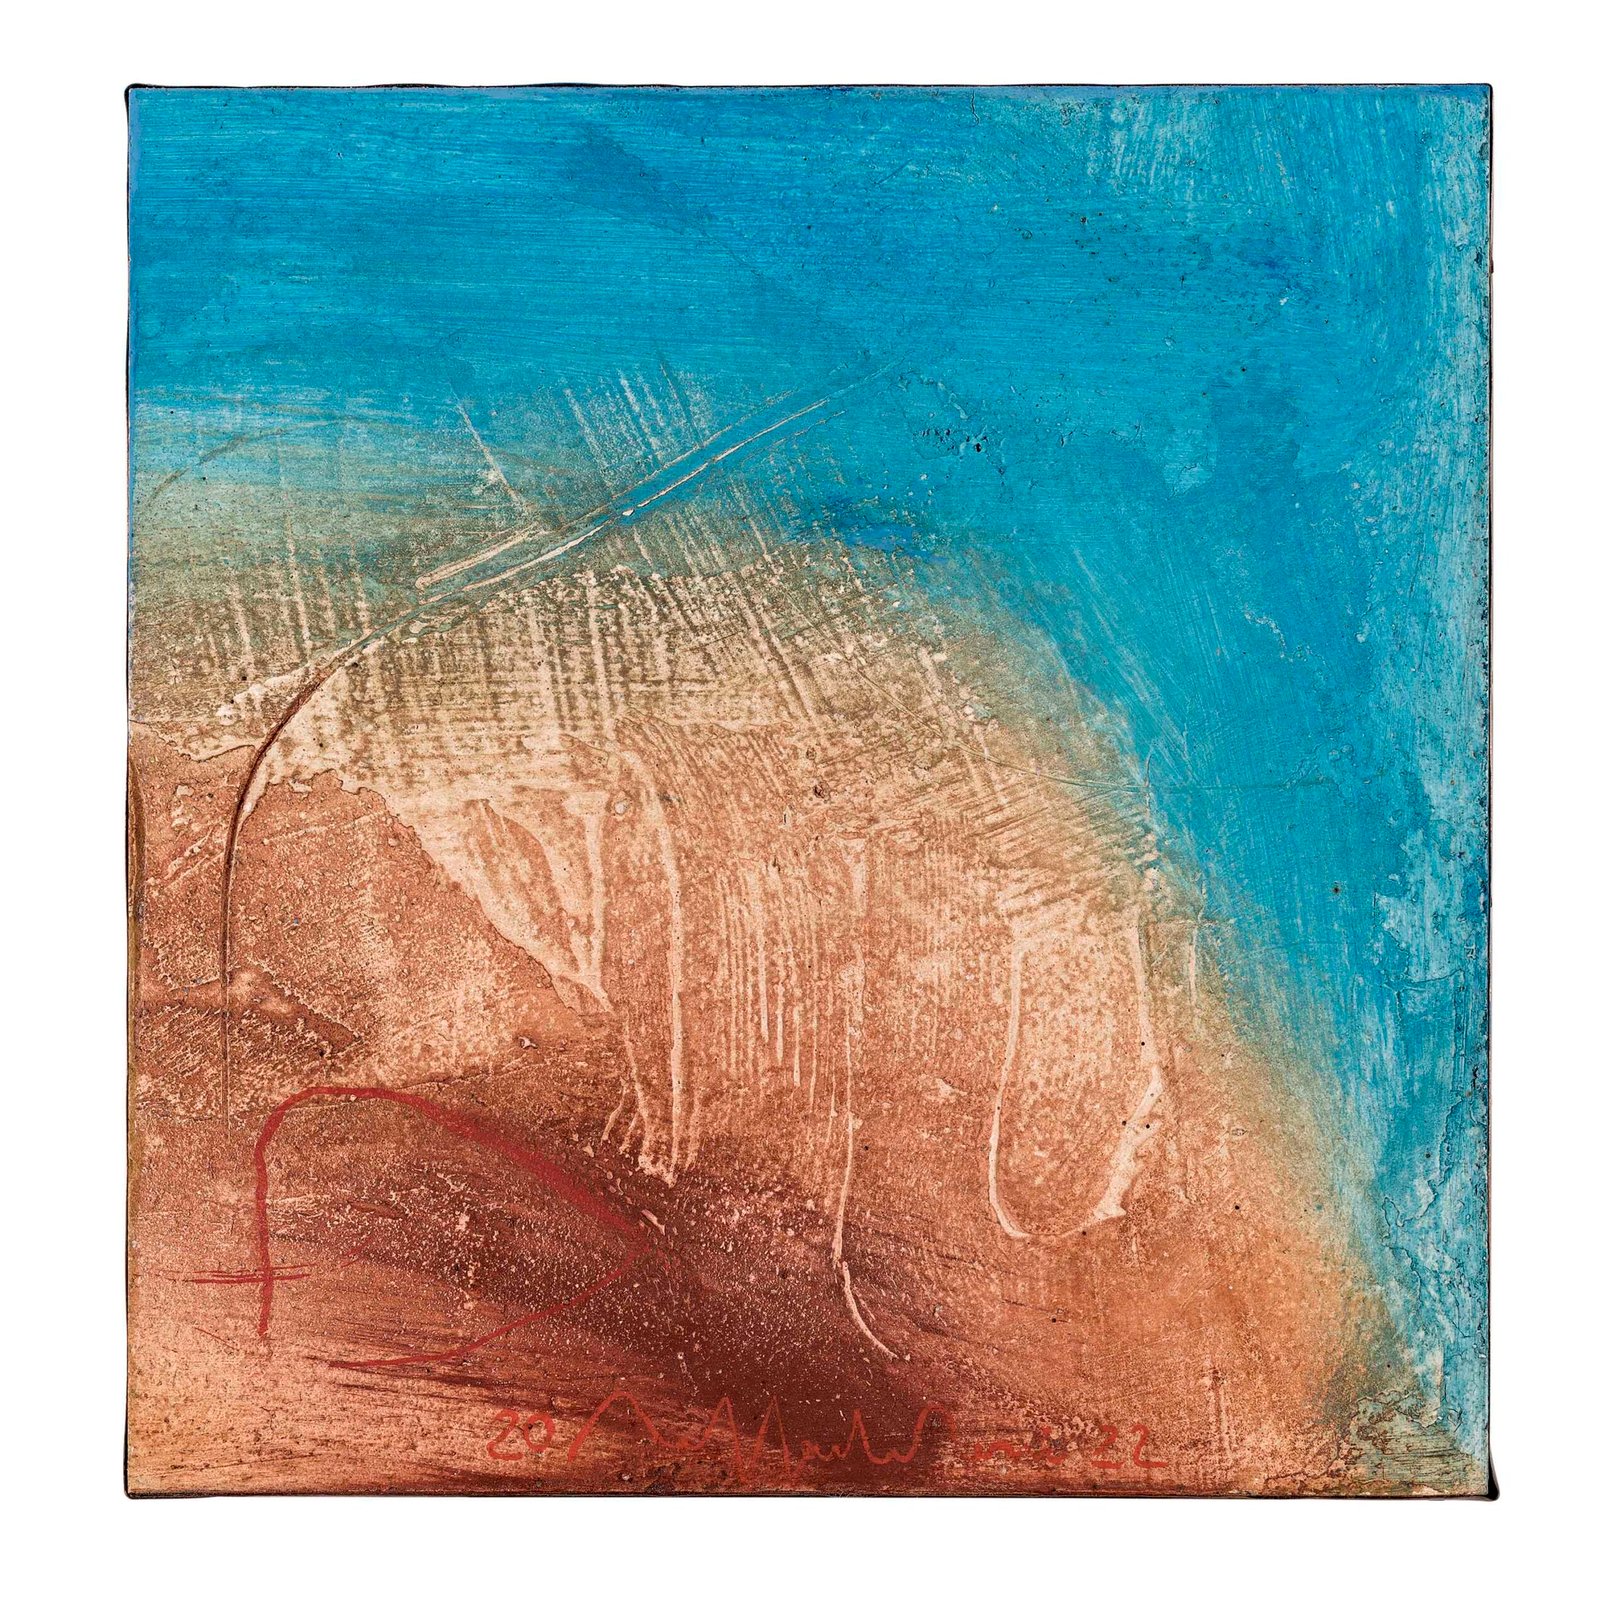 “Paesaggio dell’anima mia”, 2022 - tecnica mista su legno / mixed media on wood - cm 16,7 x 16,21 x 4,3 